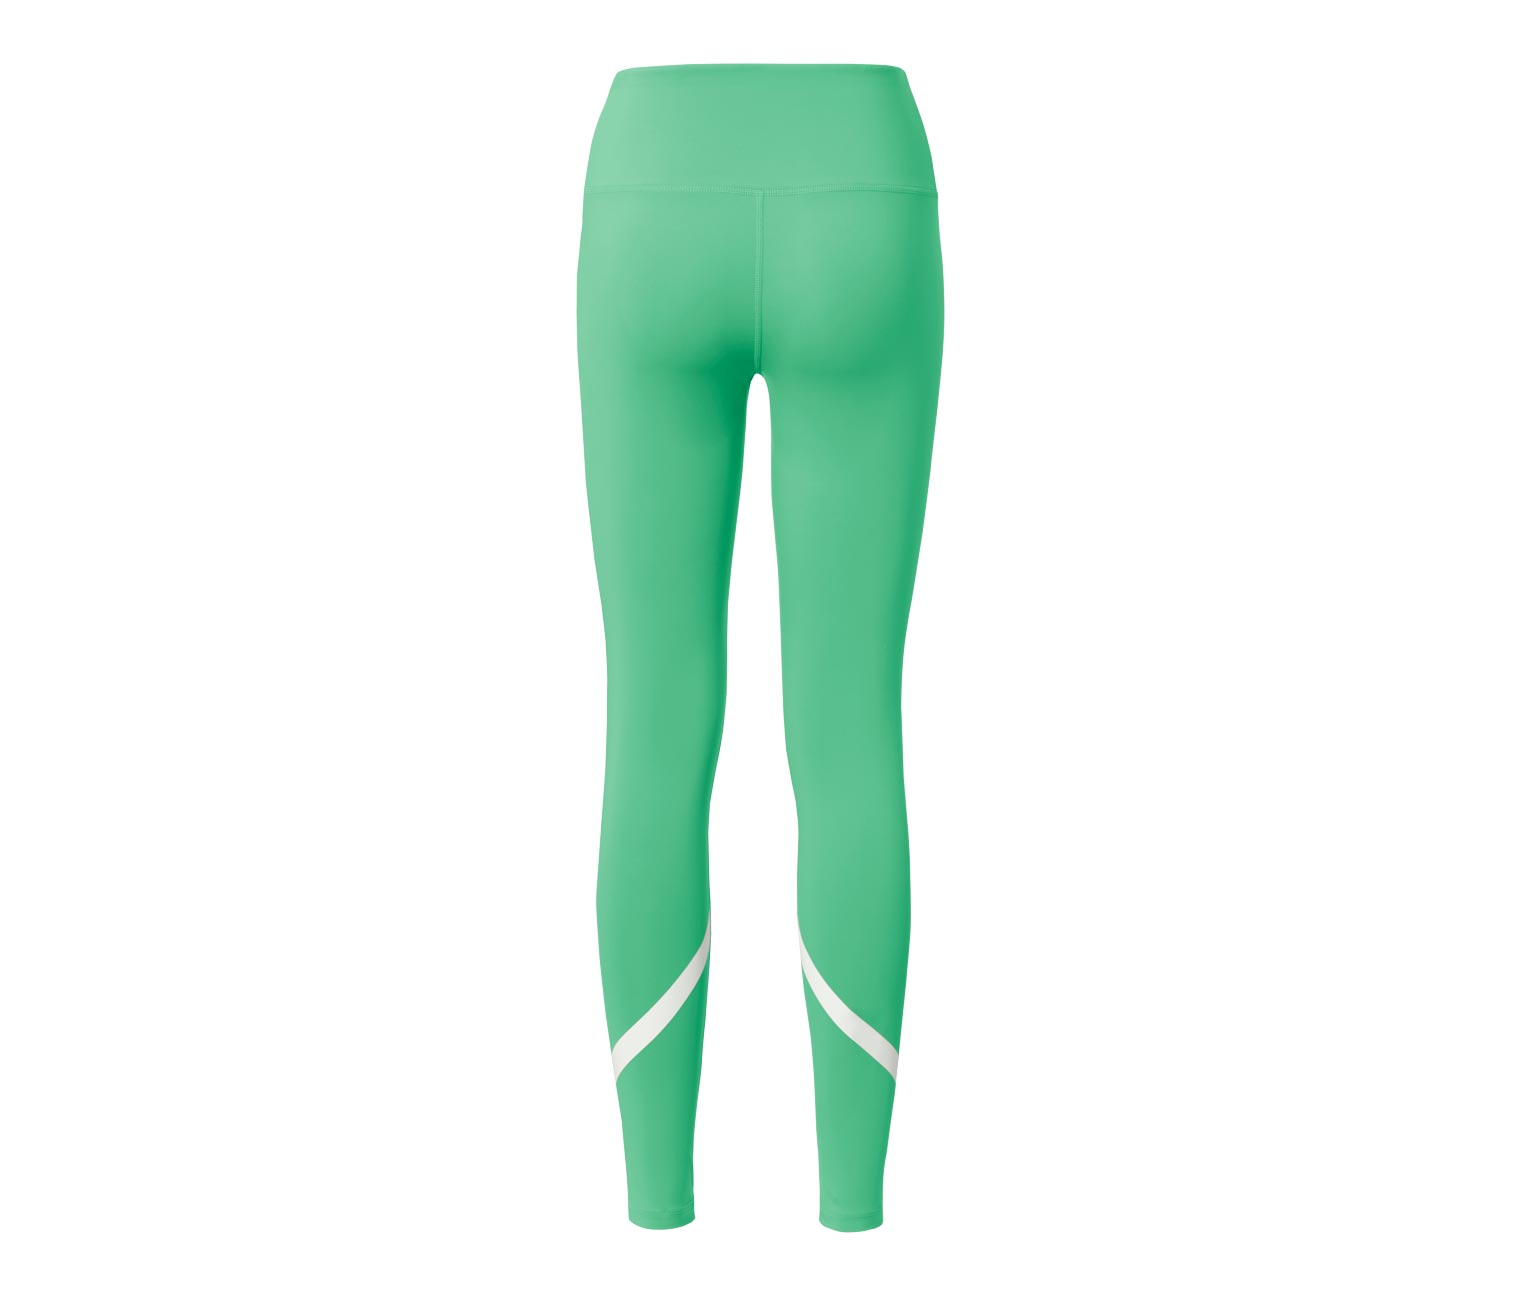 Dwustronne legginsy sportowe, zielone 660543 w Tchibo